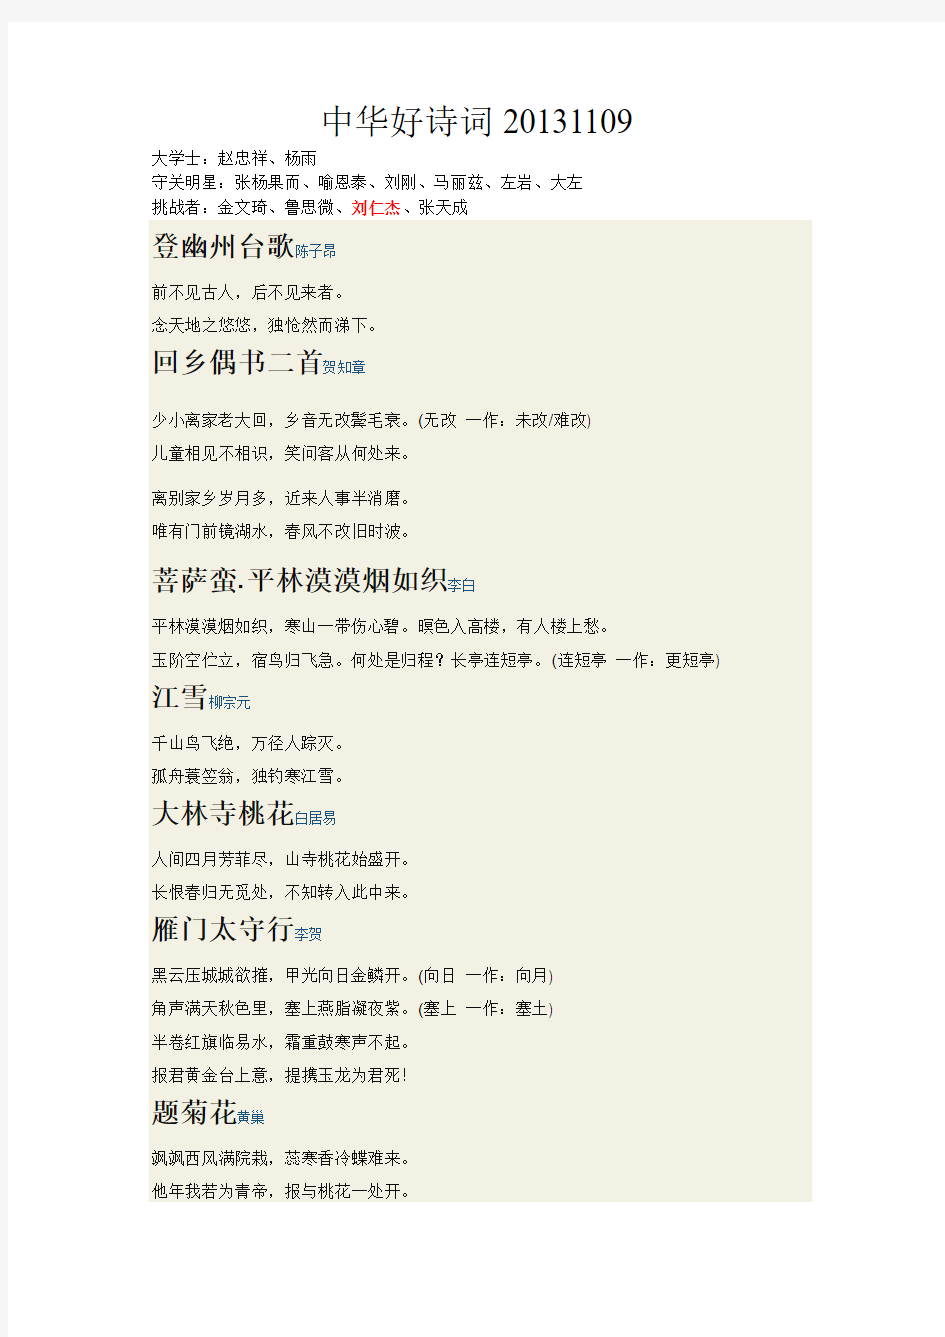 中华好诗词20131109第一季4期涉及诗词